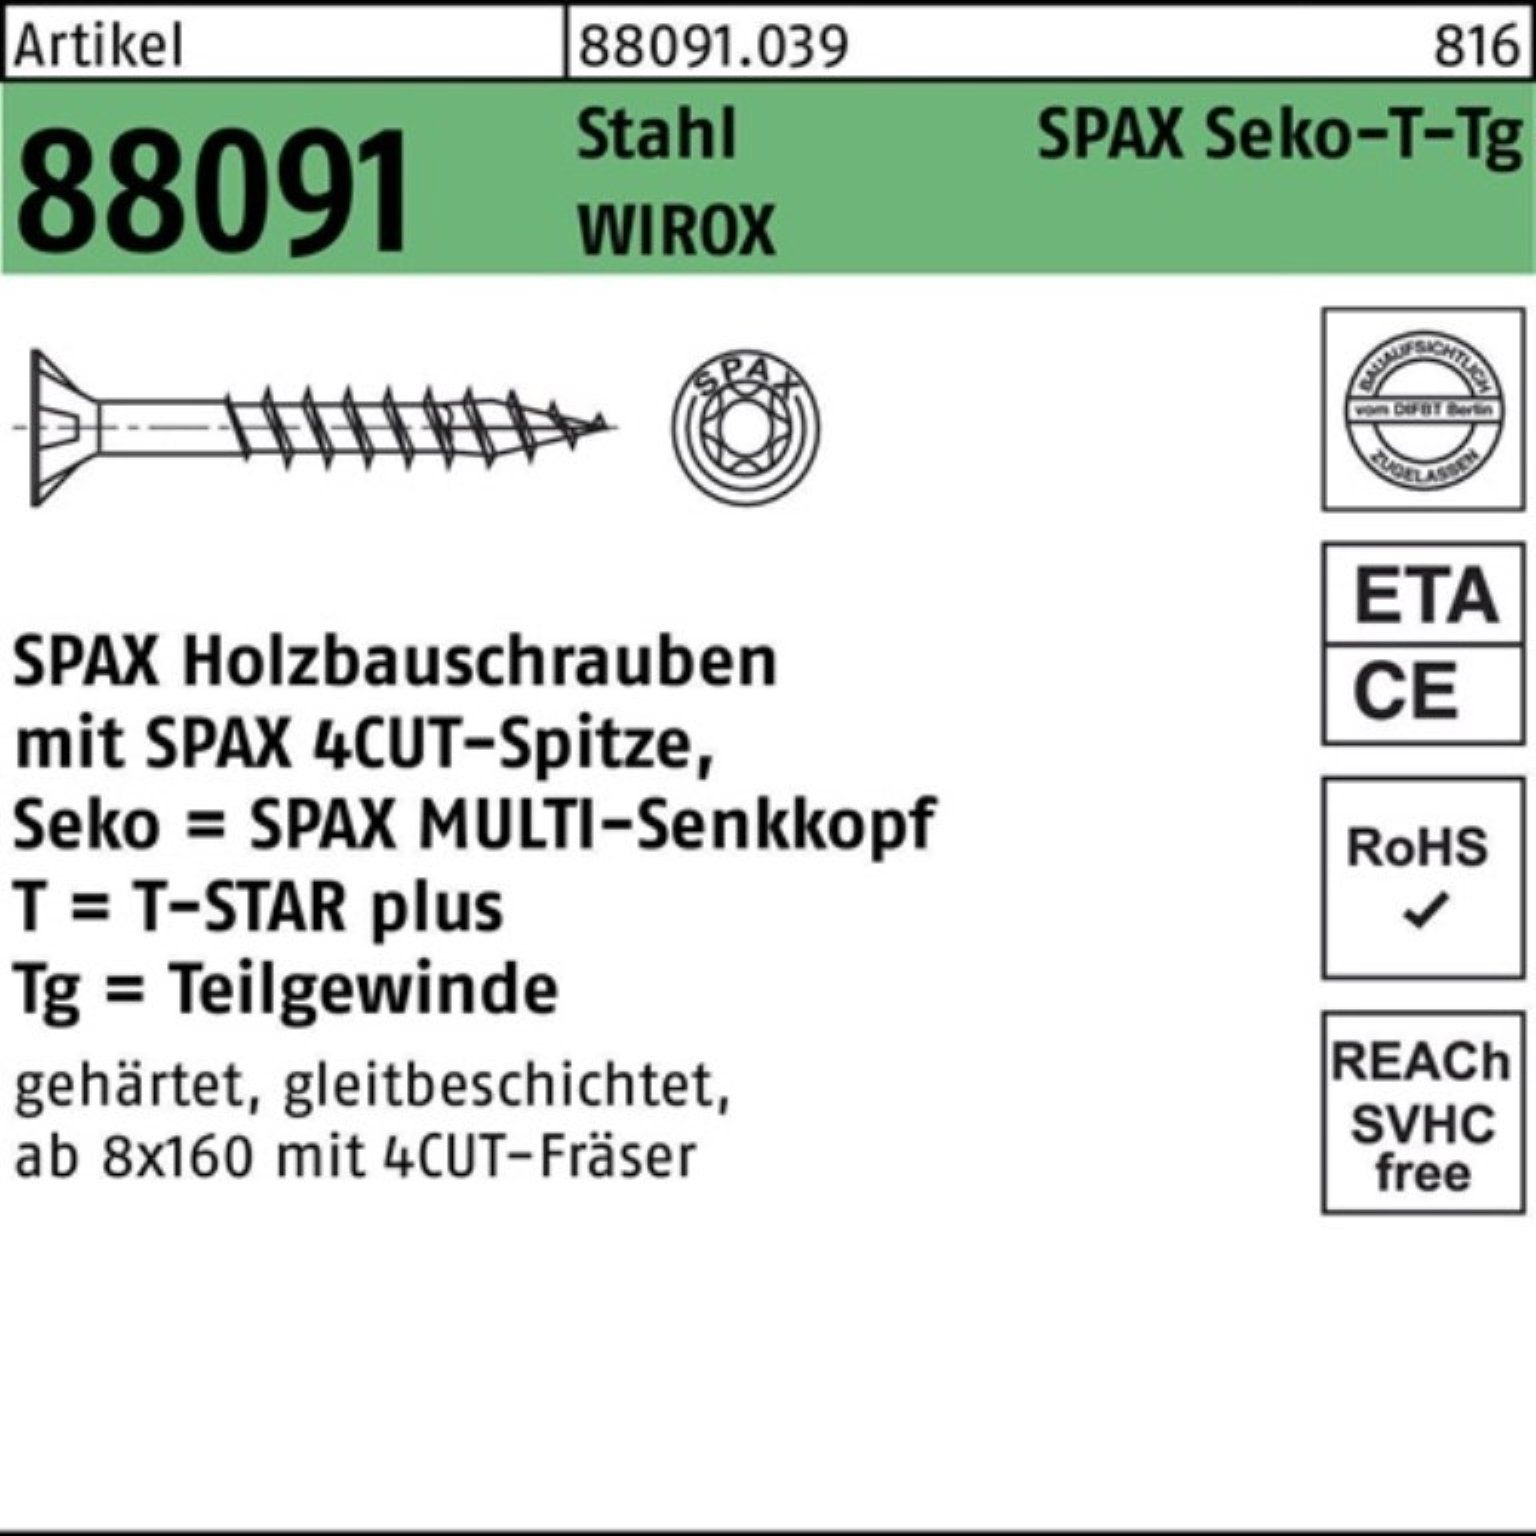 SPAX Schraube 100er Pack Schraube R 88091 SEKO/T-STAR TG 10x 180/80-T50 Stahl WIROX